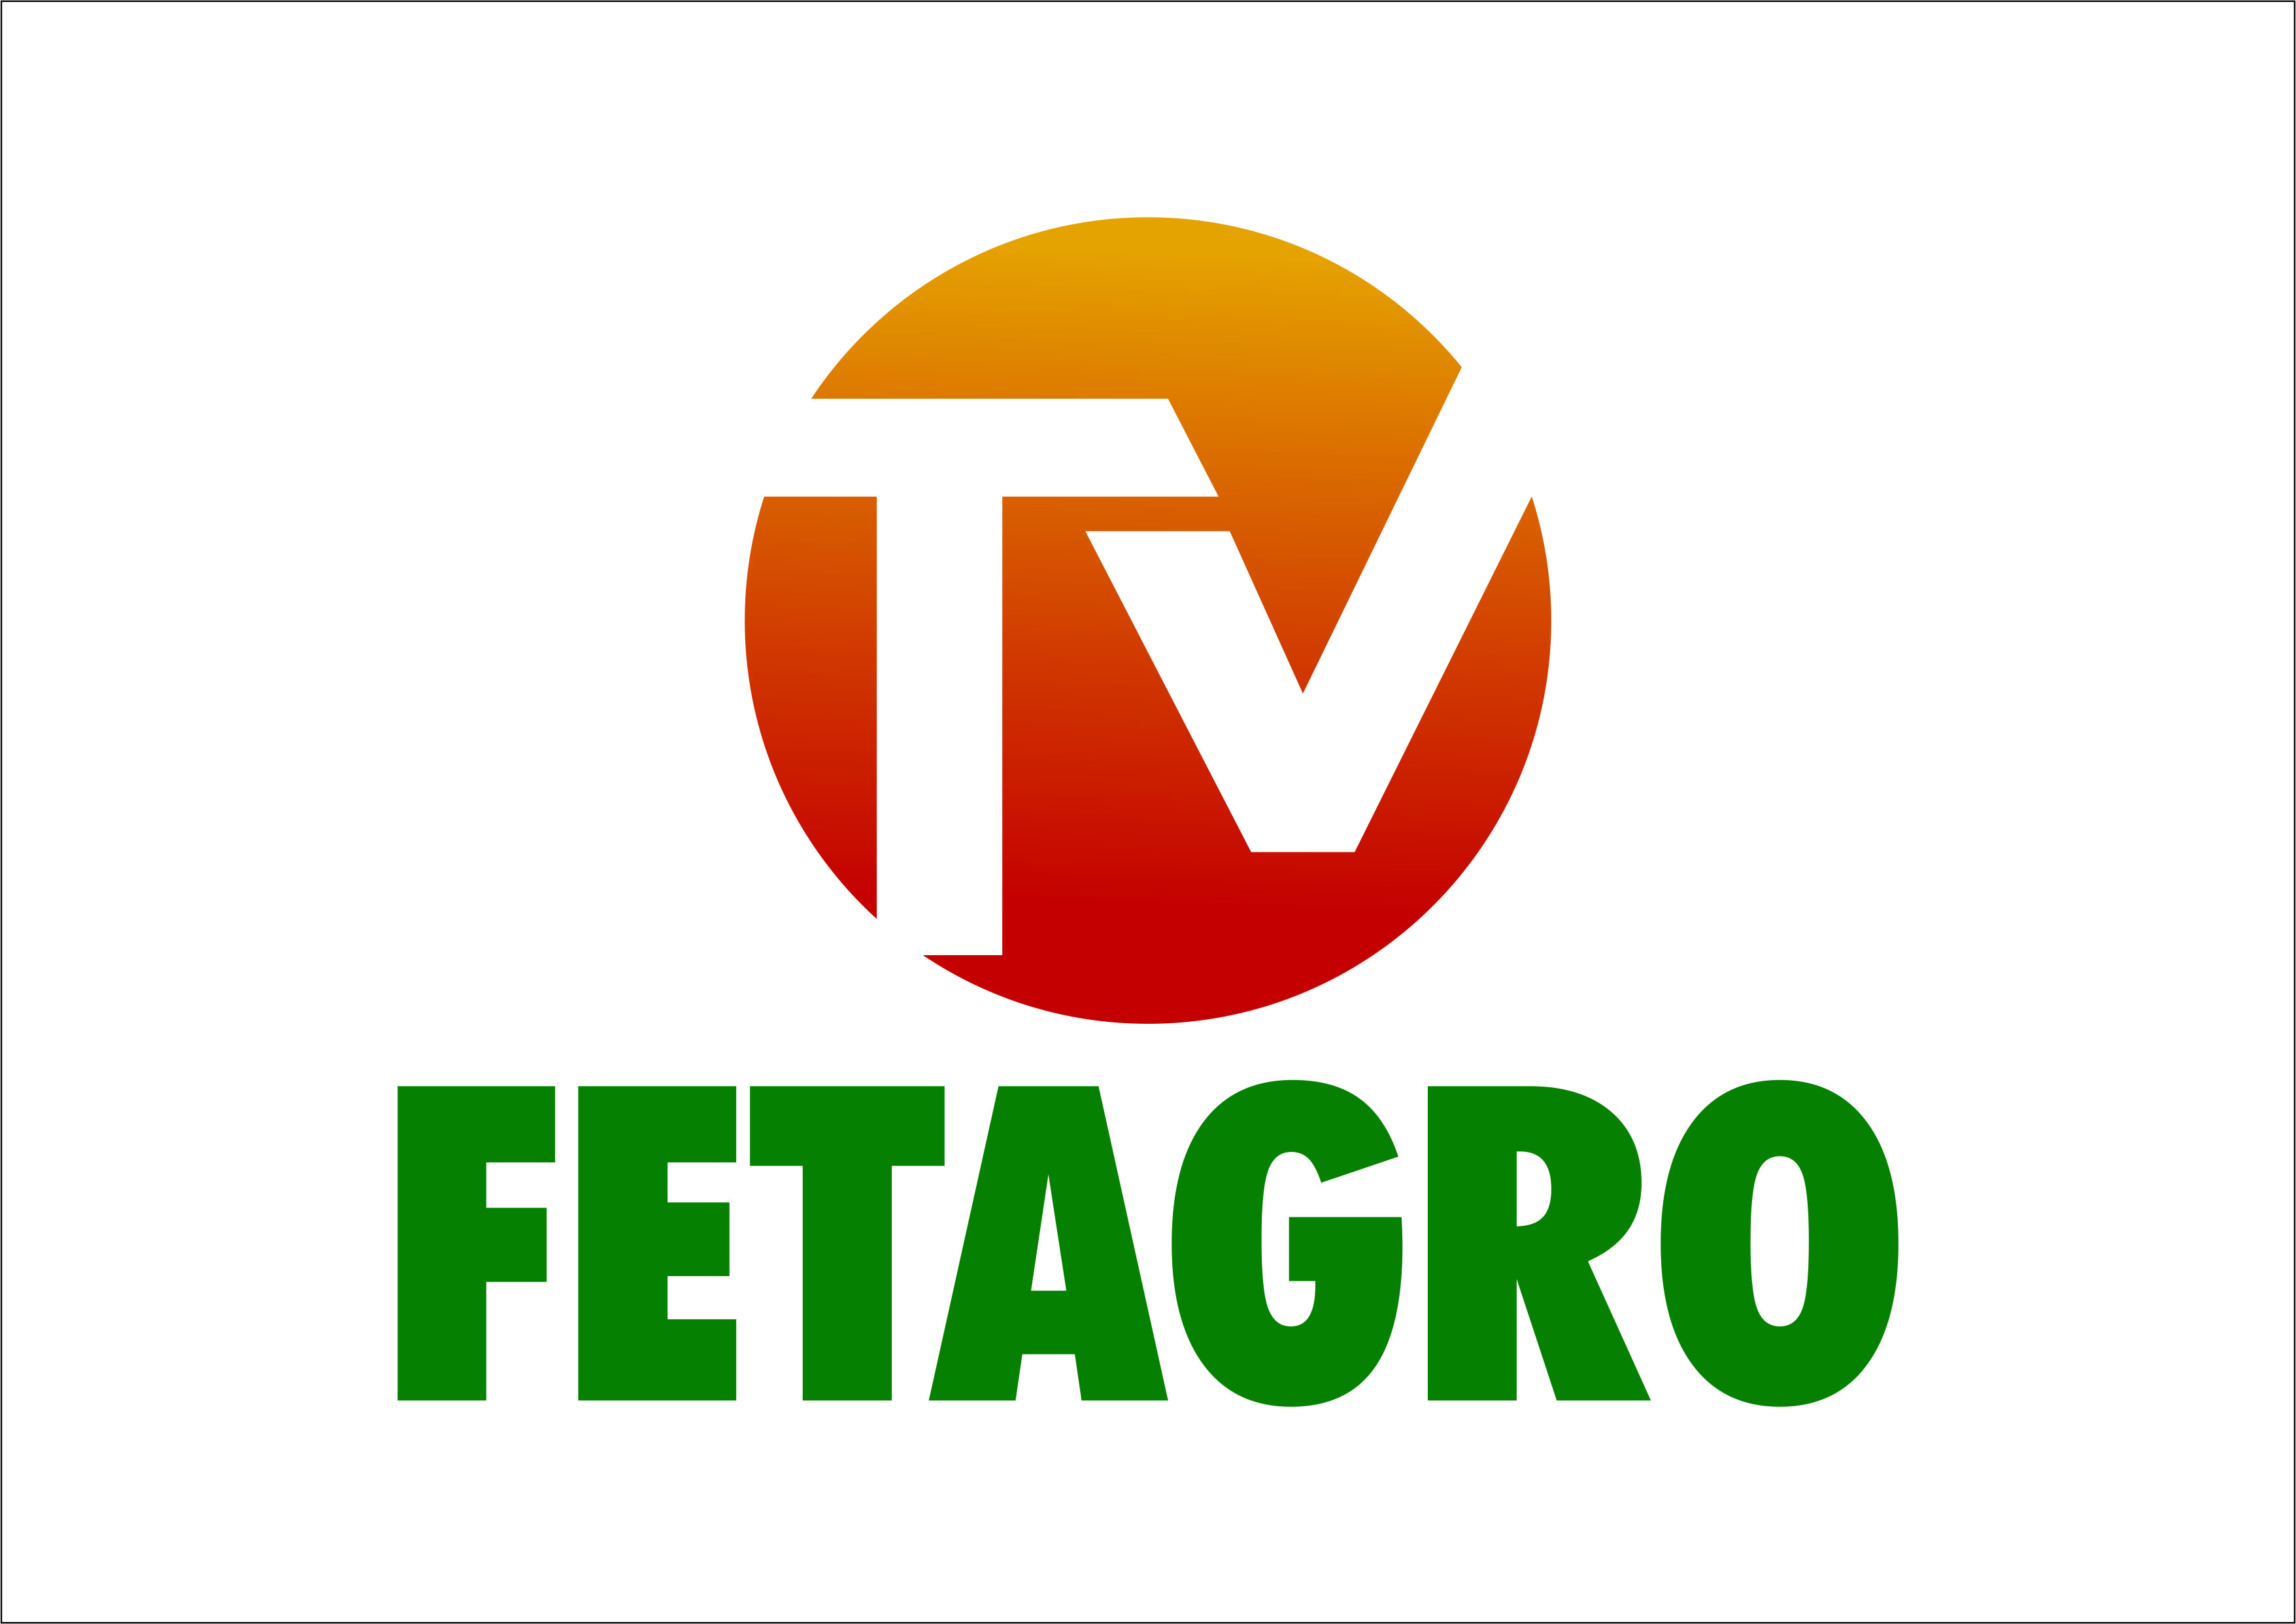 TV FETAGRO ESTÁ NO AR